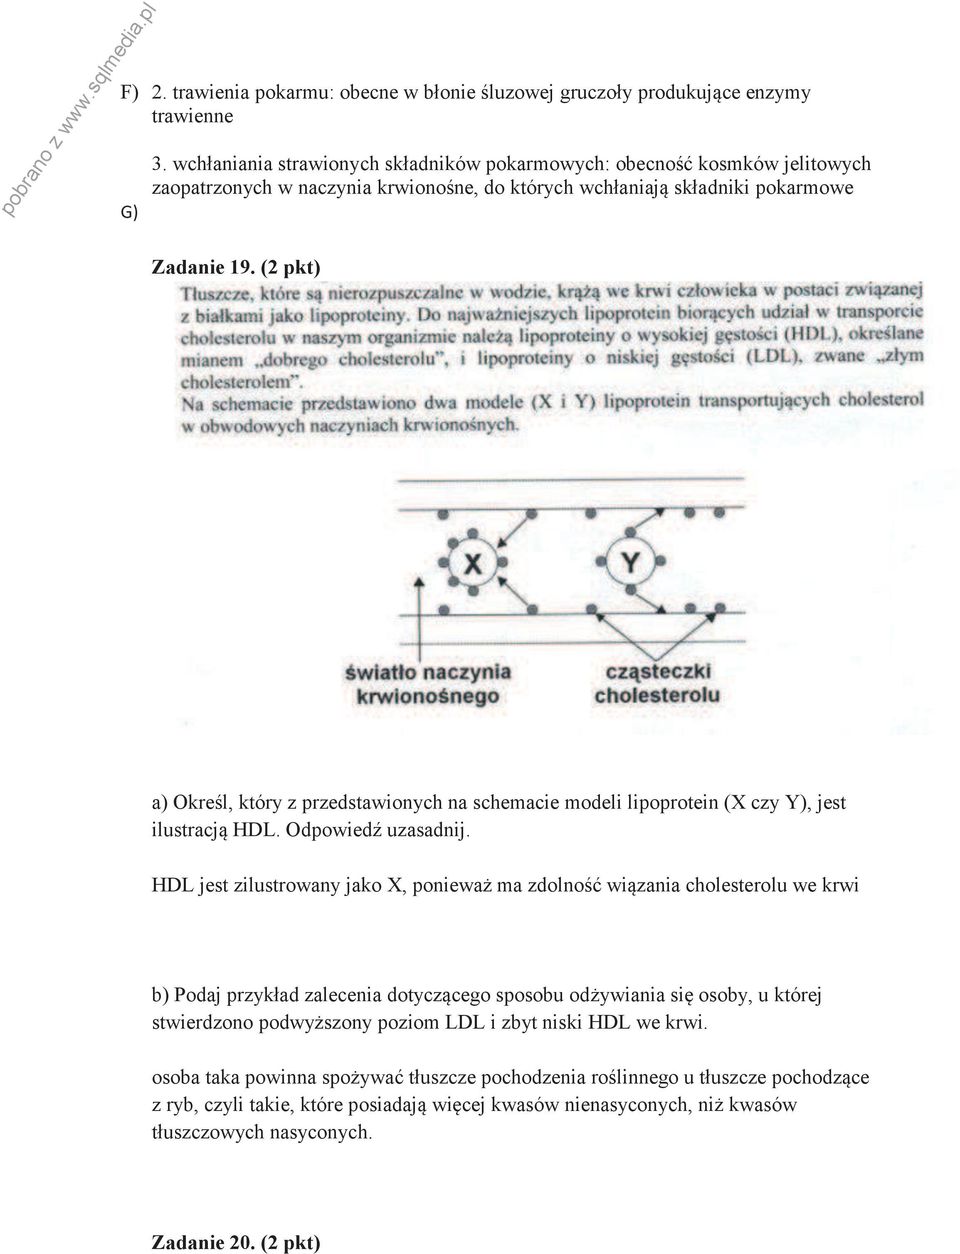 (2 pkt) a) Określ, który z przedstawionych na schemacie modeli lipoprotein (X czy Y), jest ilustracją HDL. Odpowiedź uzasadnij.